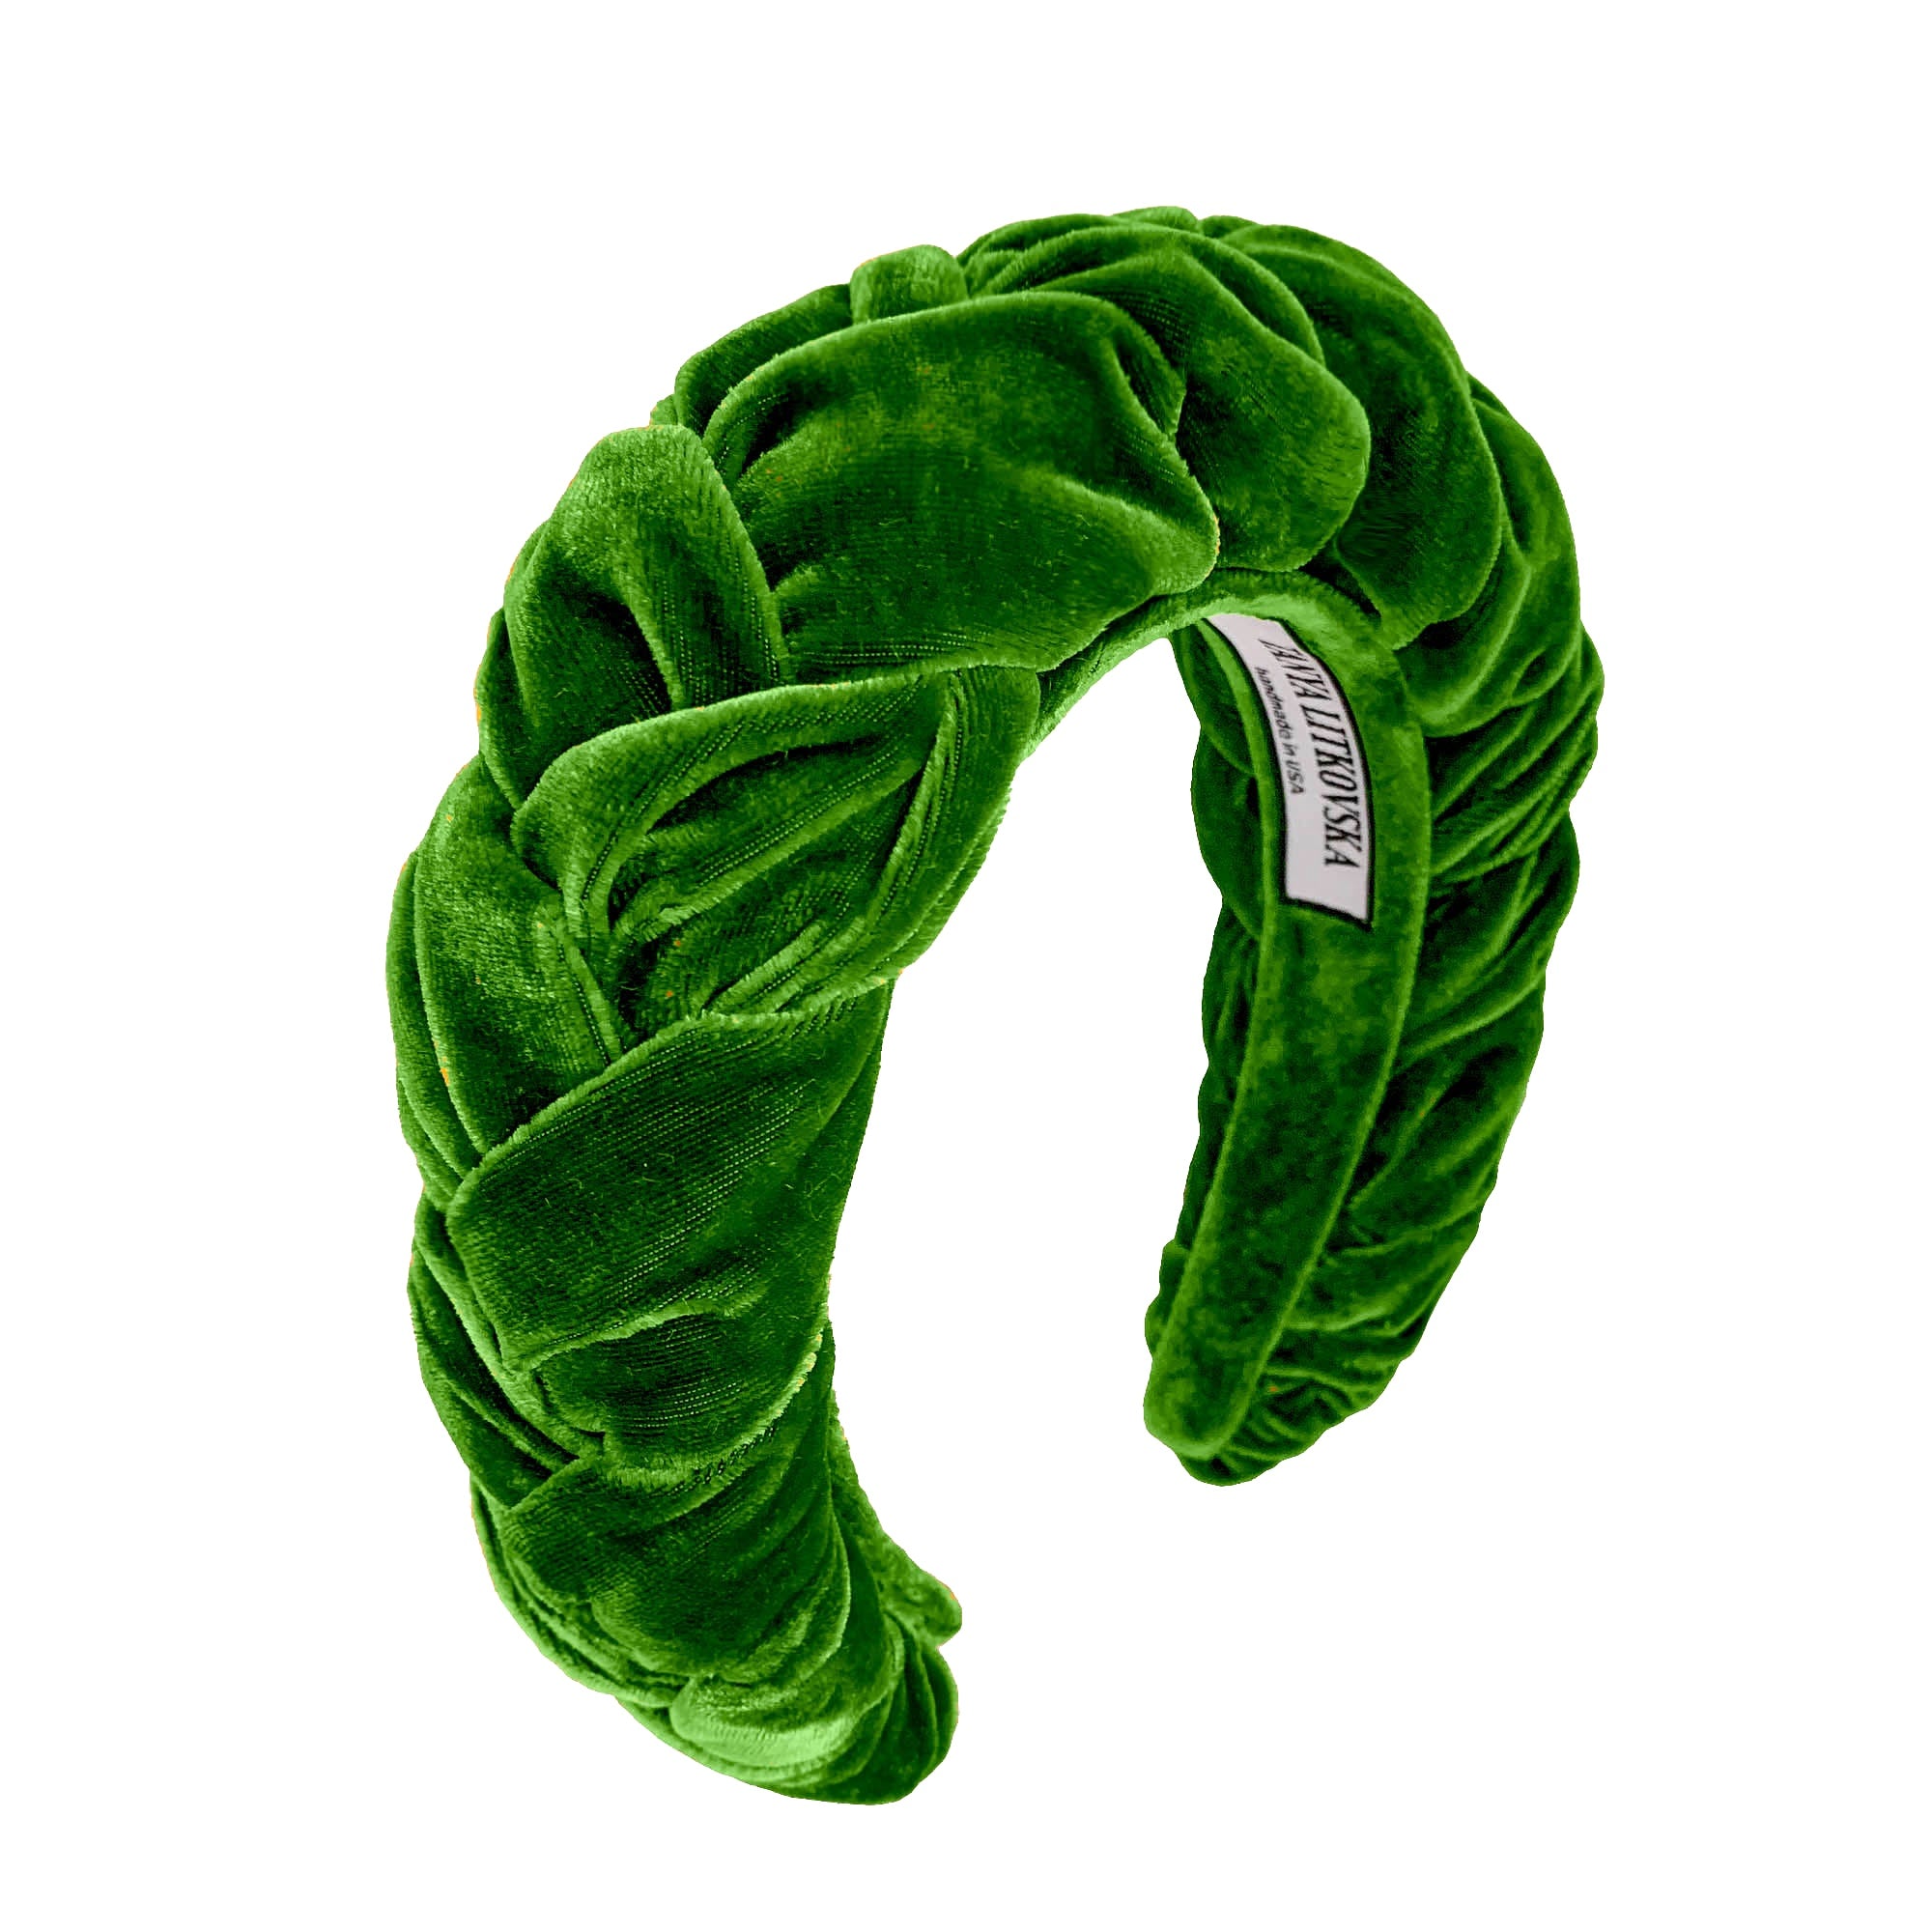 vgreen velvet headband | high end headbands | thick velvet headbands by tanya litkovska